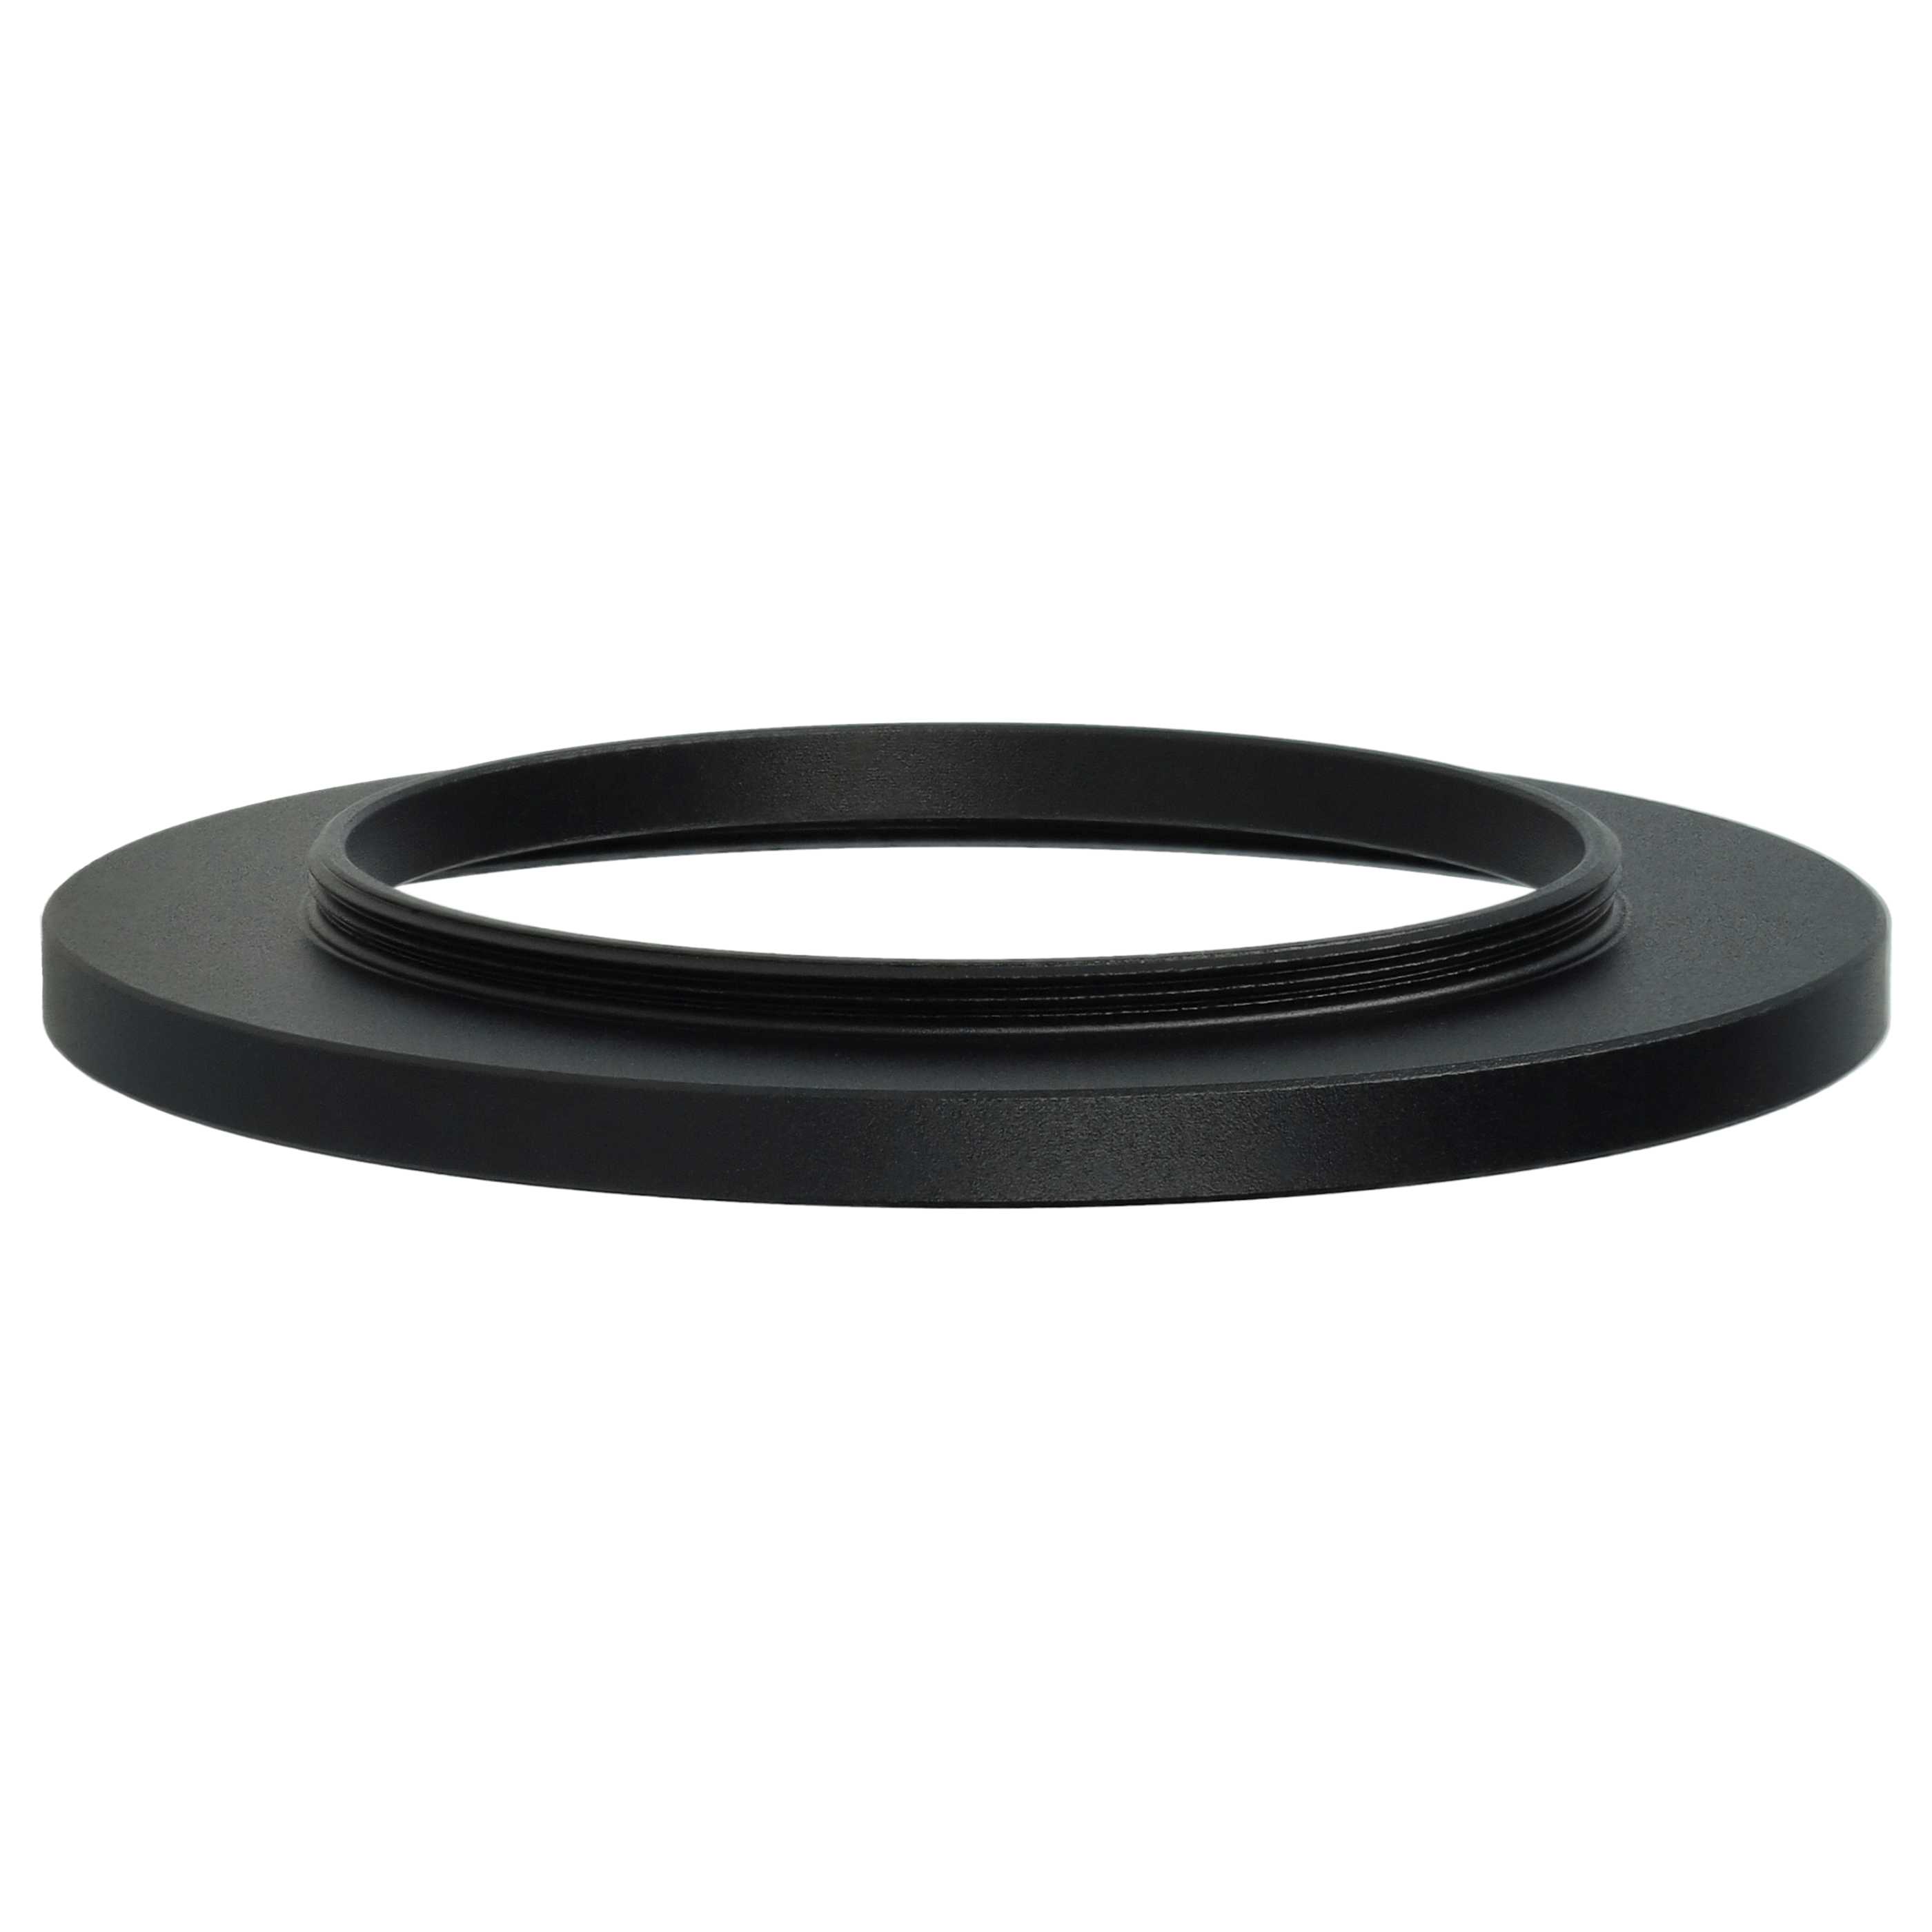 Step-Up-Ring Adapter 46 mm auf 62 mm passend für diverse Kamera-Objektive - Filteradapter